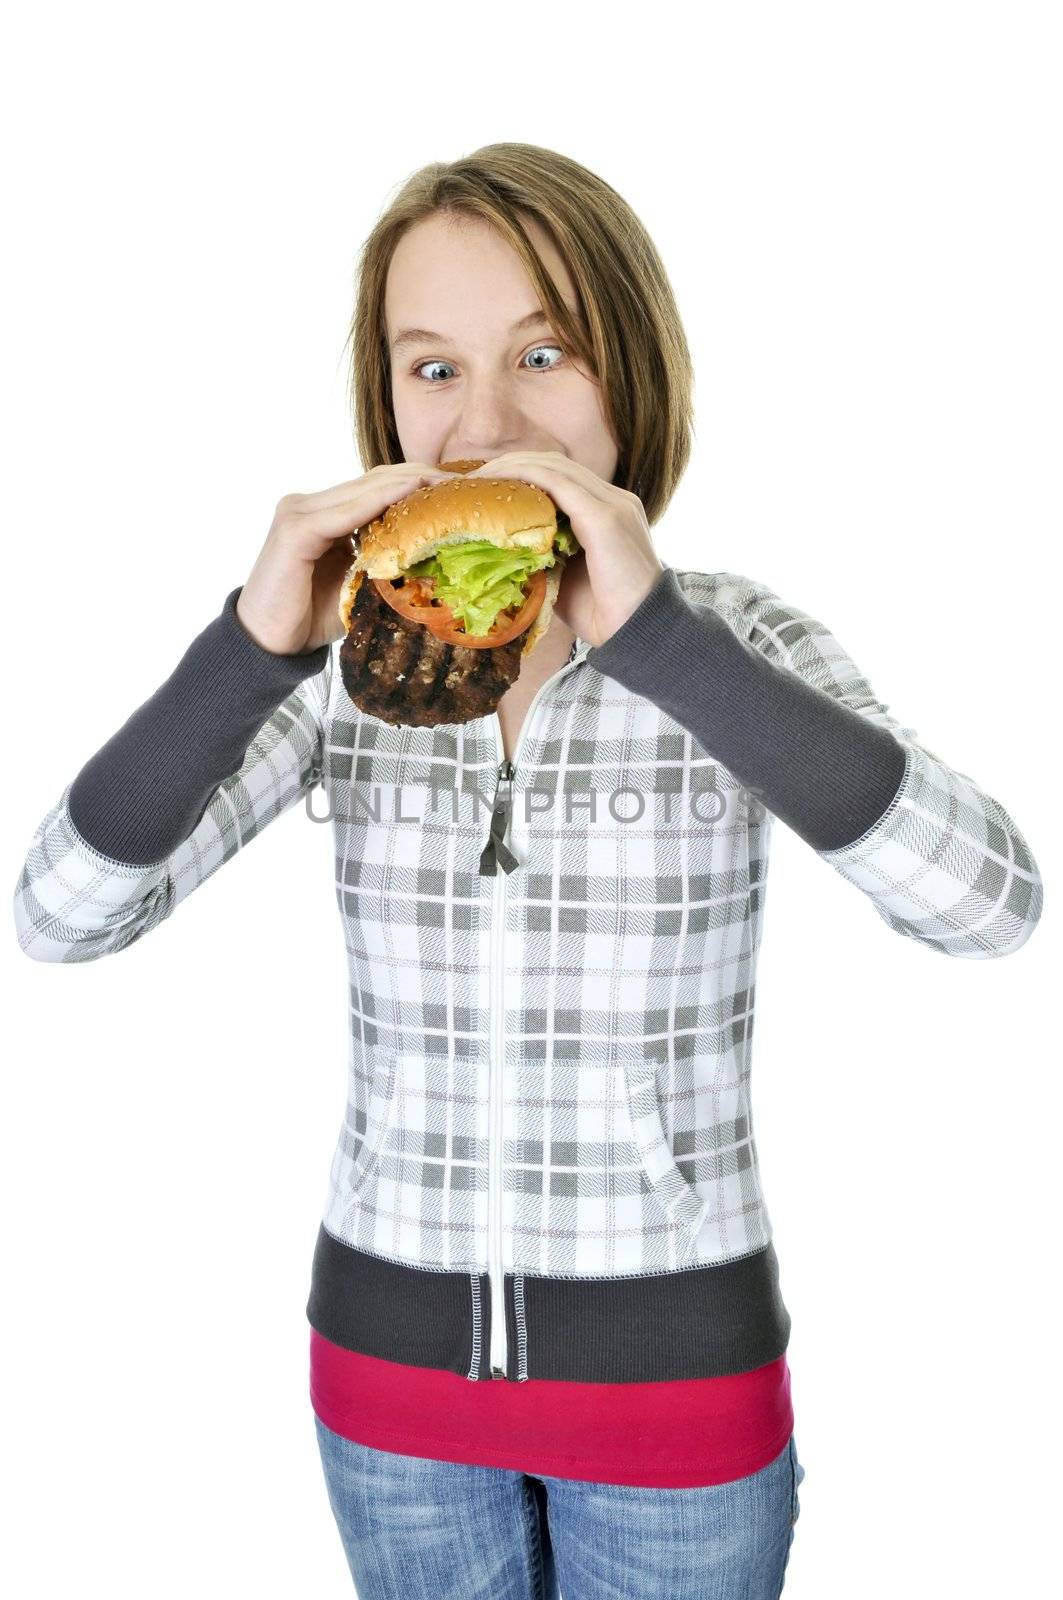 Teenage girl eating a big hamburger isolated on white background